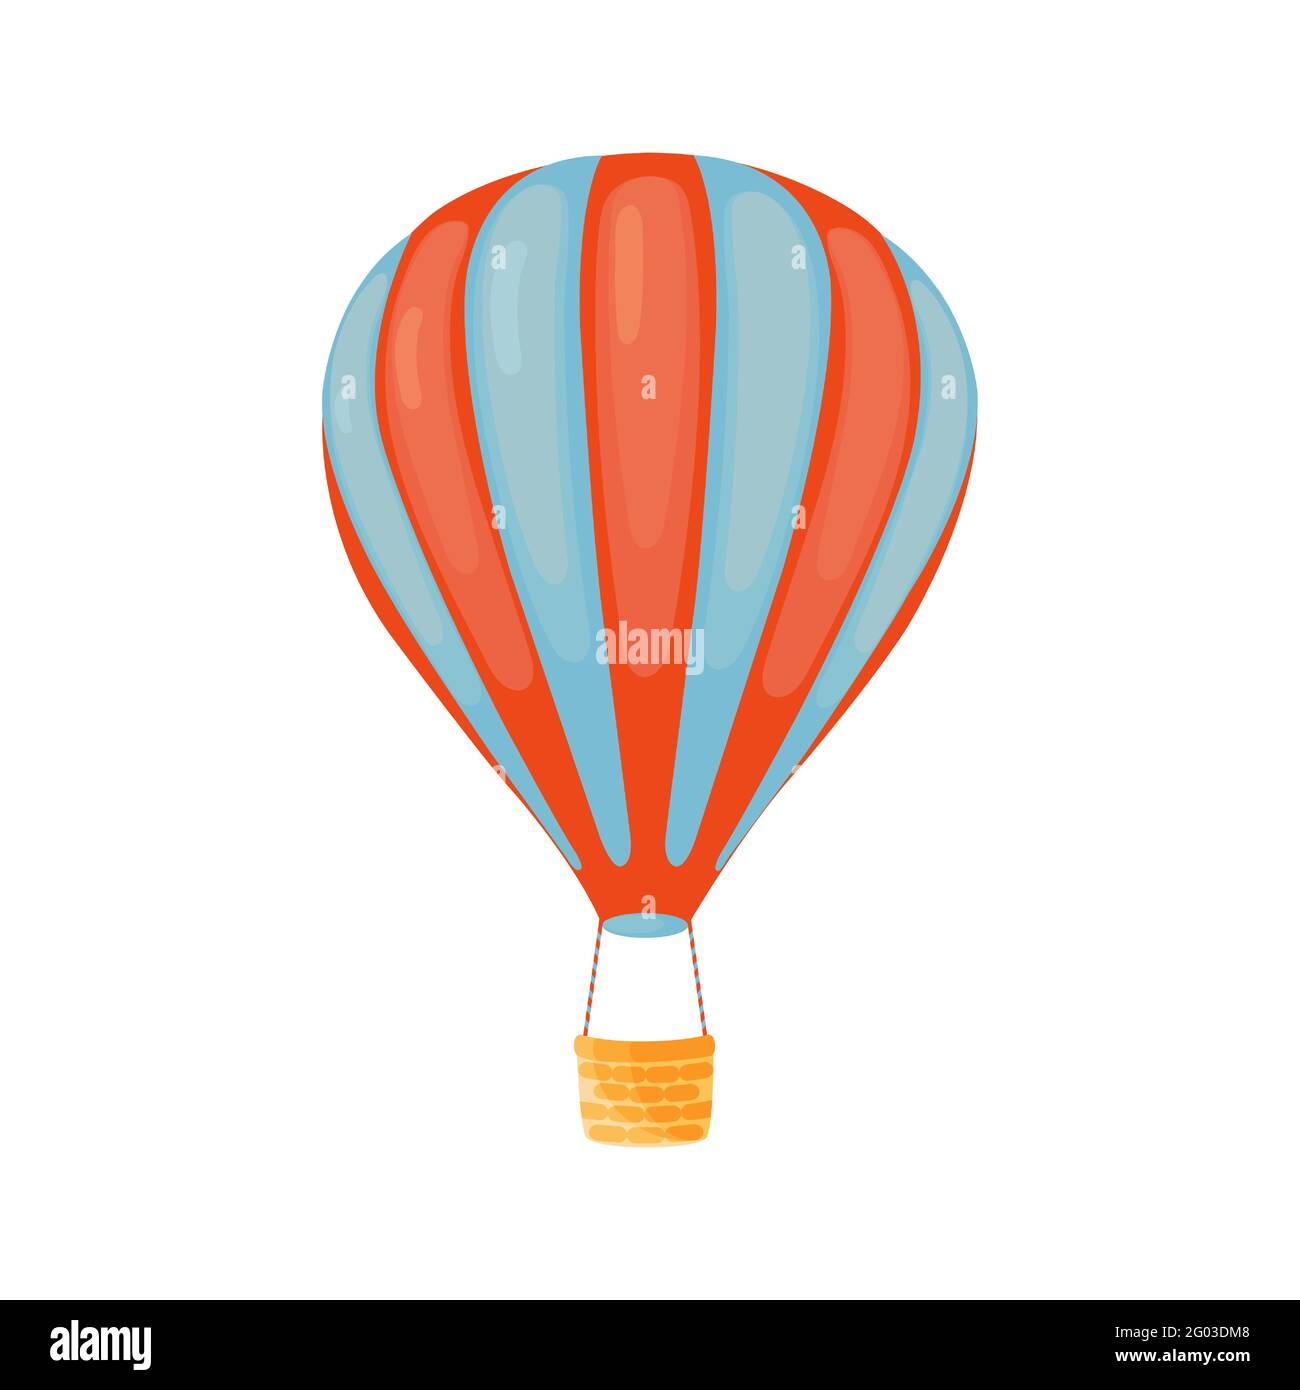 Gestreifter rot-blauer Heißluftballon mit Korb im Cartoon-Stil isoliert auf weißem Hintergrund. Flaches Design mit Heißluftballon. Abenteuer Tourismus Konzept. Stock Vektor